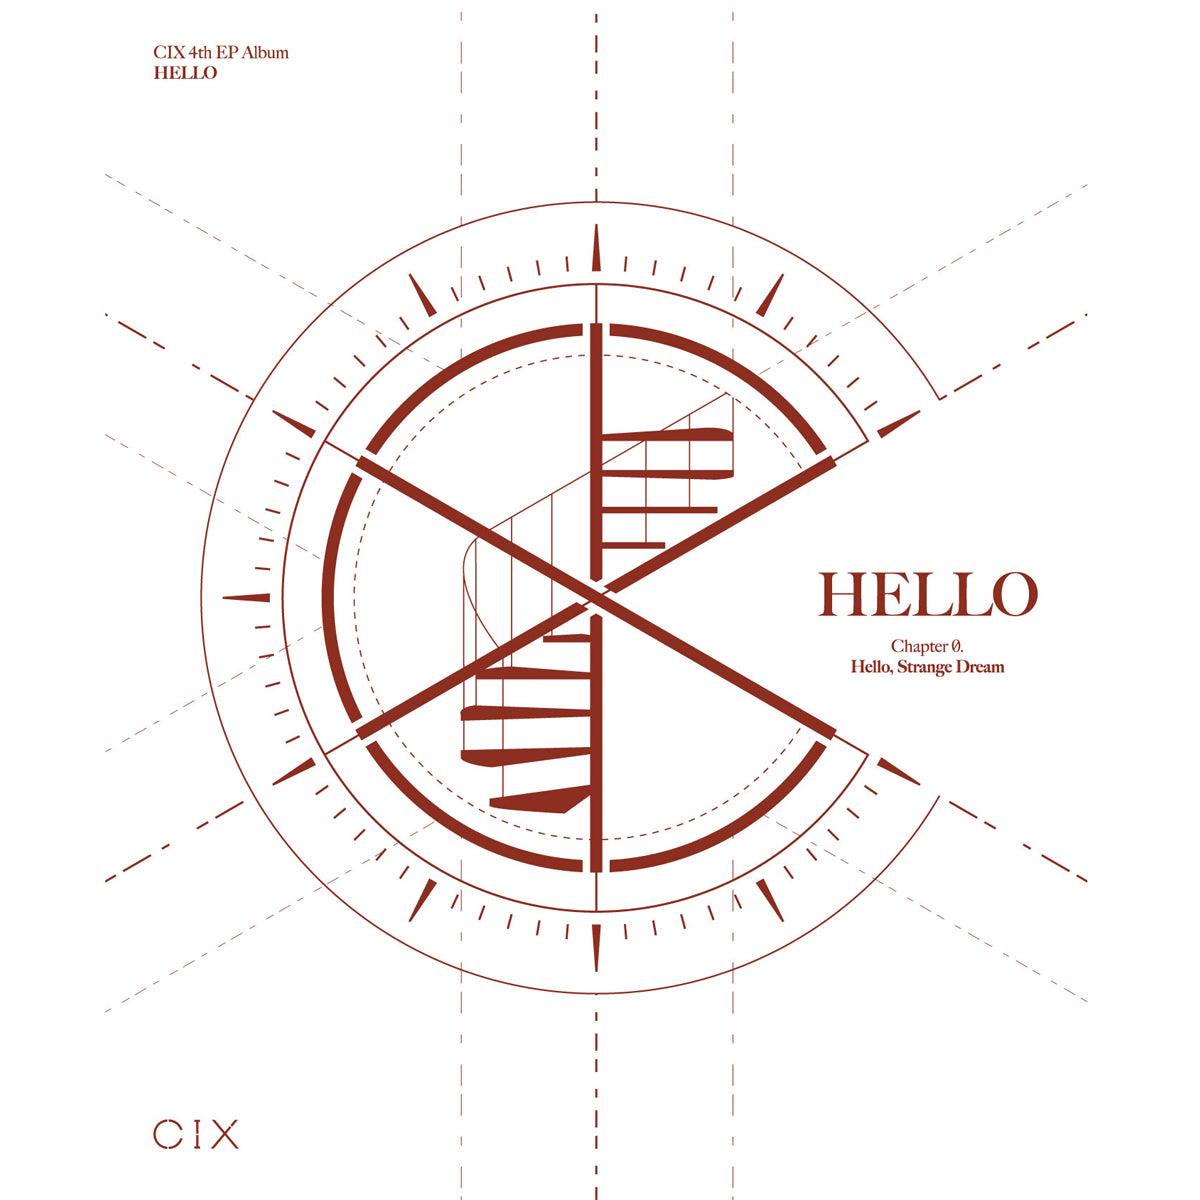 CIX 4TH EP ALBUM 'HELLO CHAPTER Ø. HELLO, STRANGE DREAM'